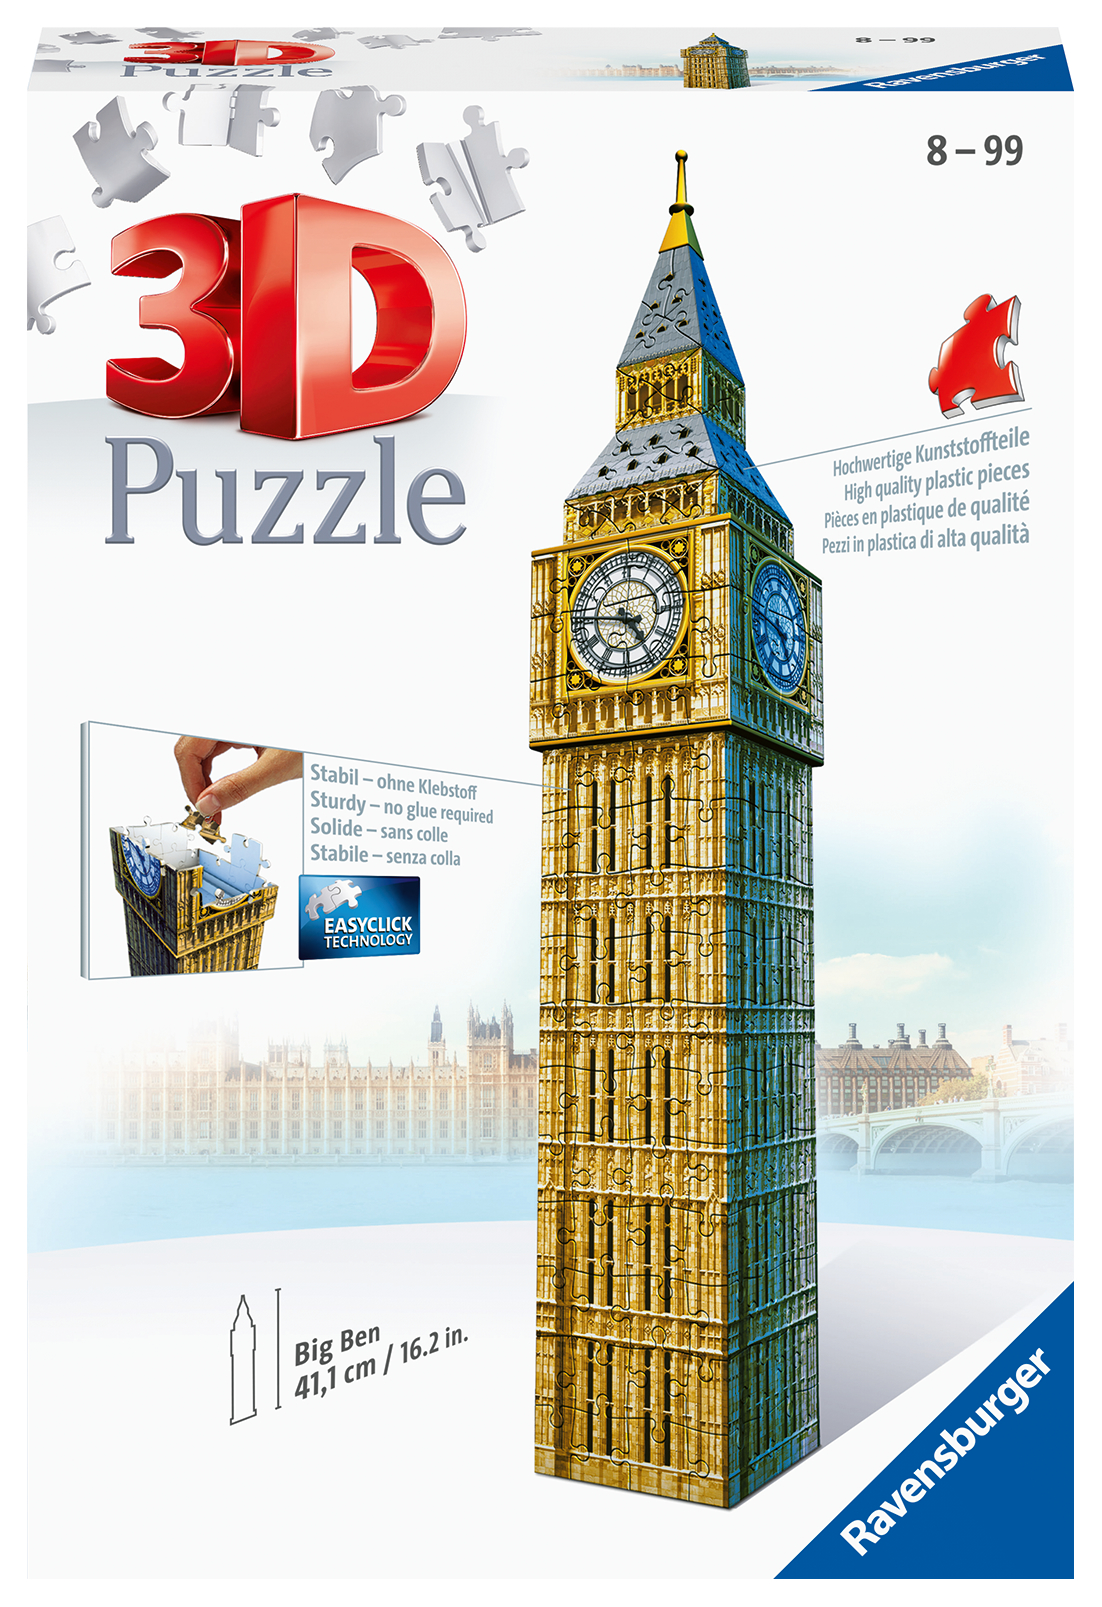 Ravensburger - 3d puzzle big ben, londra, 216 pezzi, 10+ anni - RAVENSBURGER 3D PUZZLE